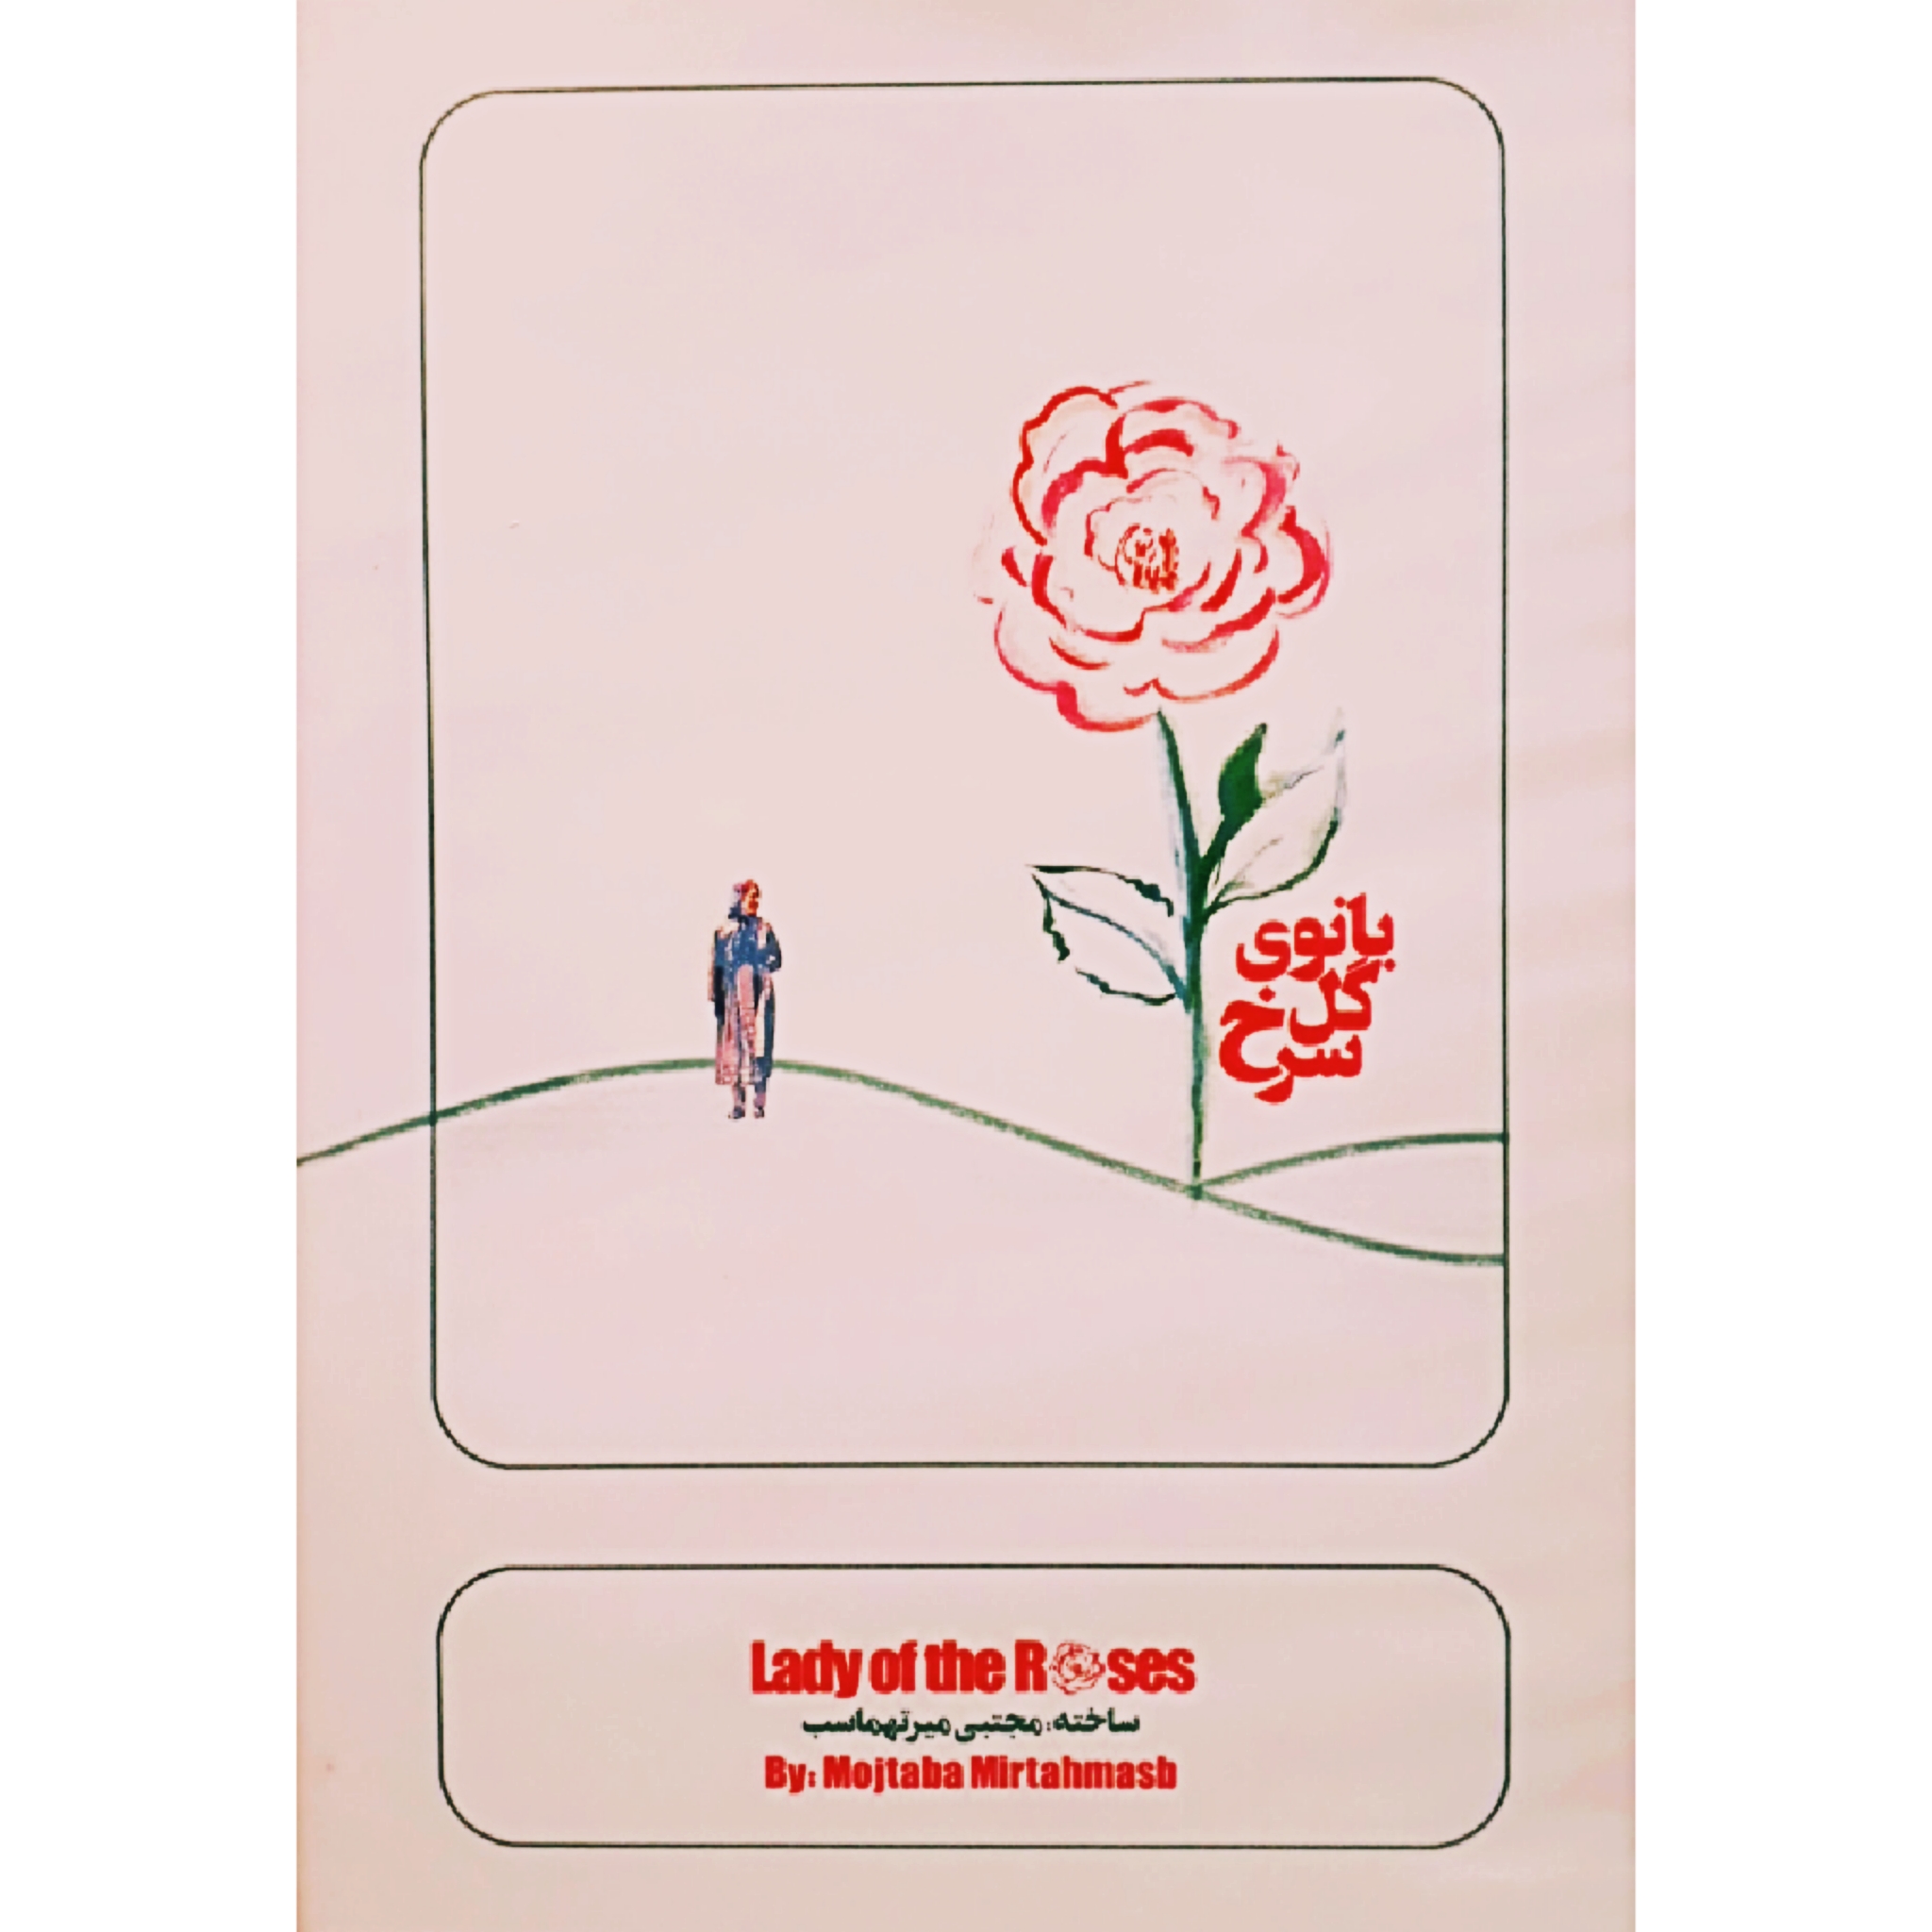 فیلم مستند بانوی گل سرخ اثر مجتبی میرتهماسب